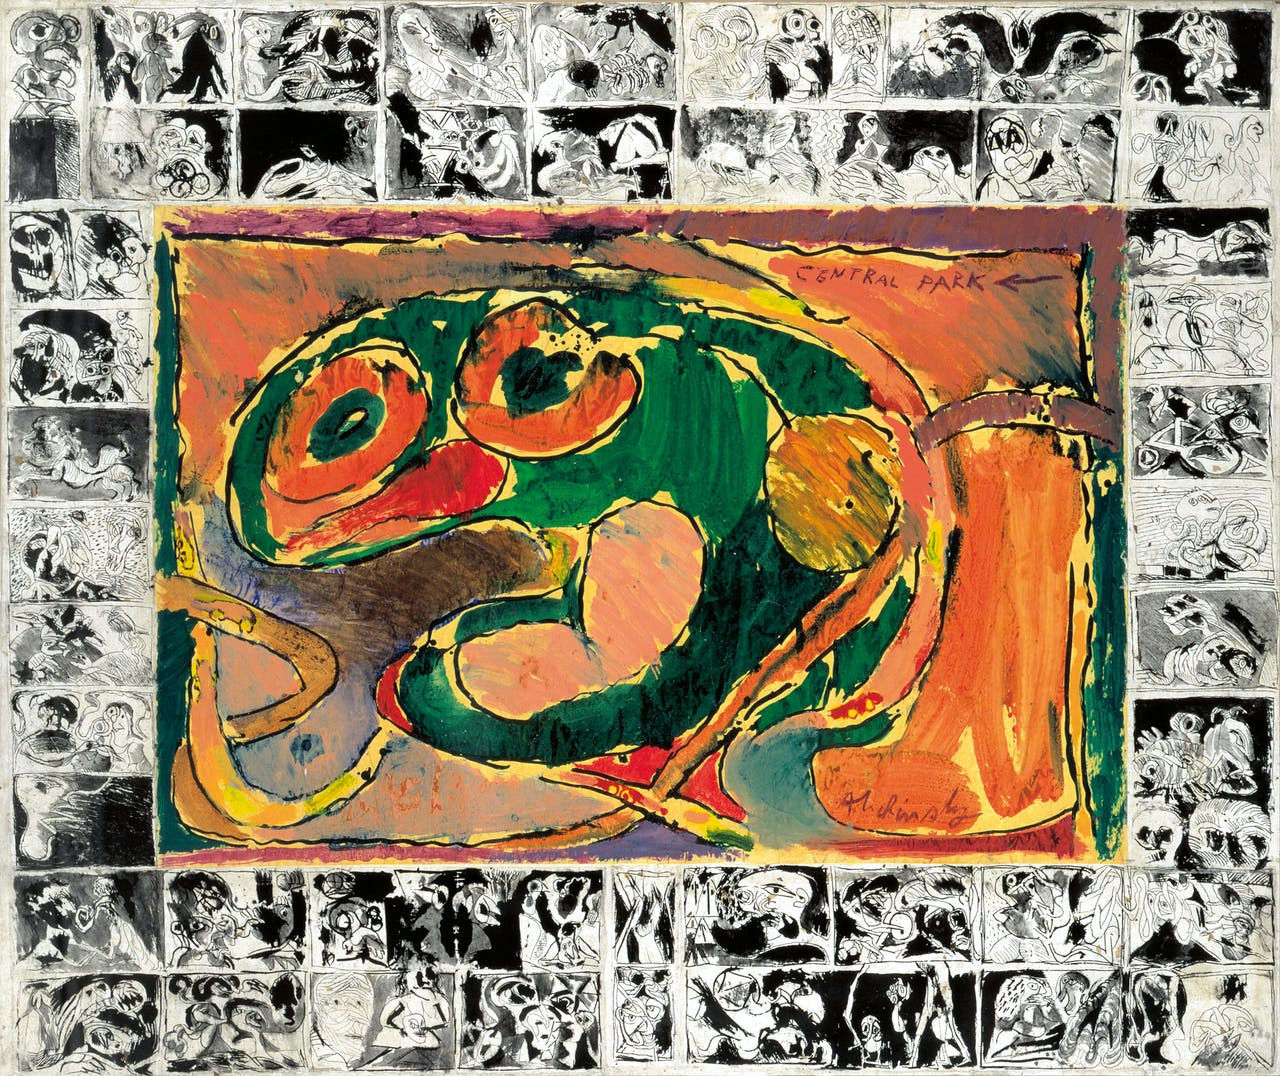 Cobra kunst; ‘Central Park’, uit 1965, is een sleutelwerk in het oeuvre van Alechinsky. Voor het eerst werkte hij met acrylverf op papier en met zijn typerende ‘omlijsting’.